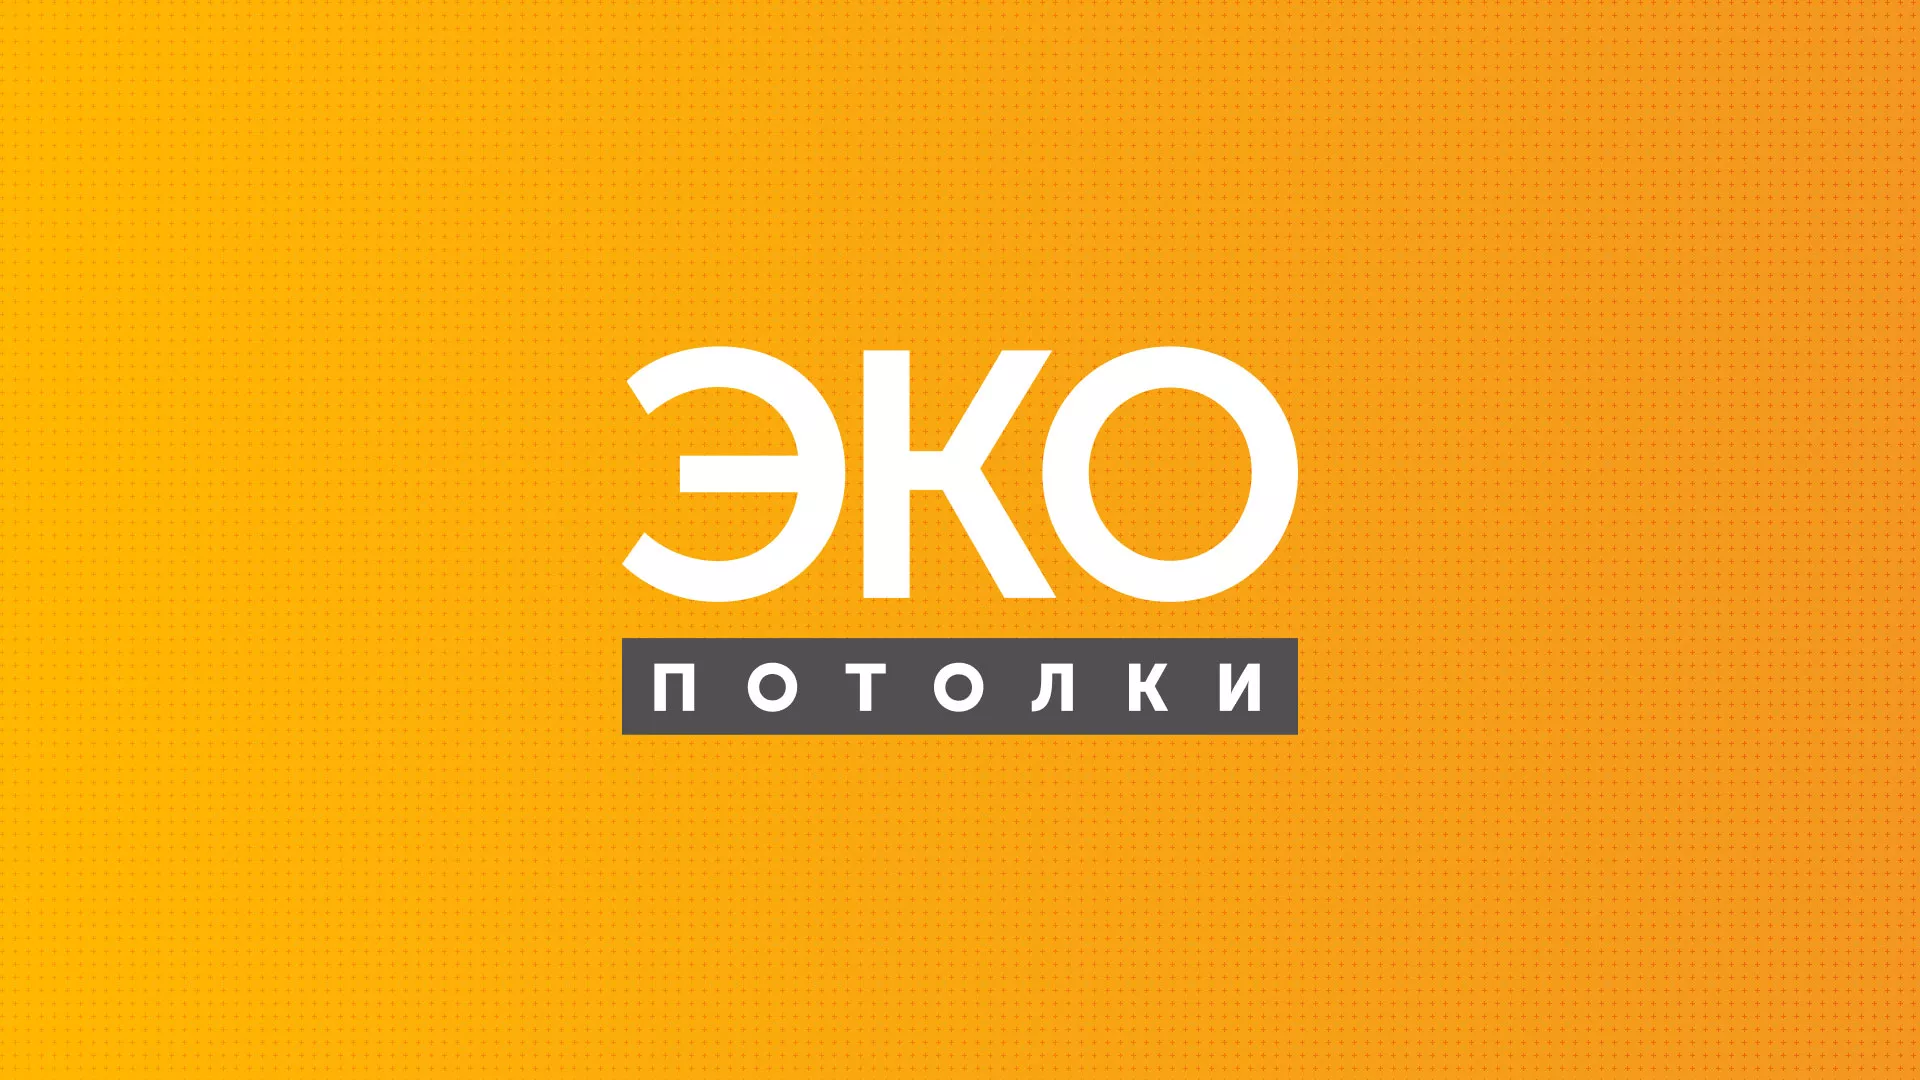 Разработка сайта по натяжным потолкам «Эко Потолки» в Азнакаево